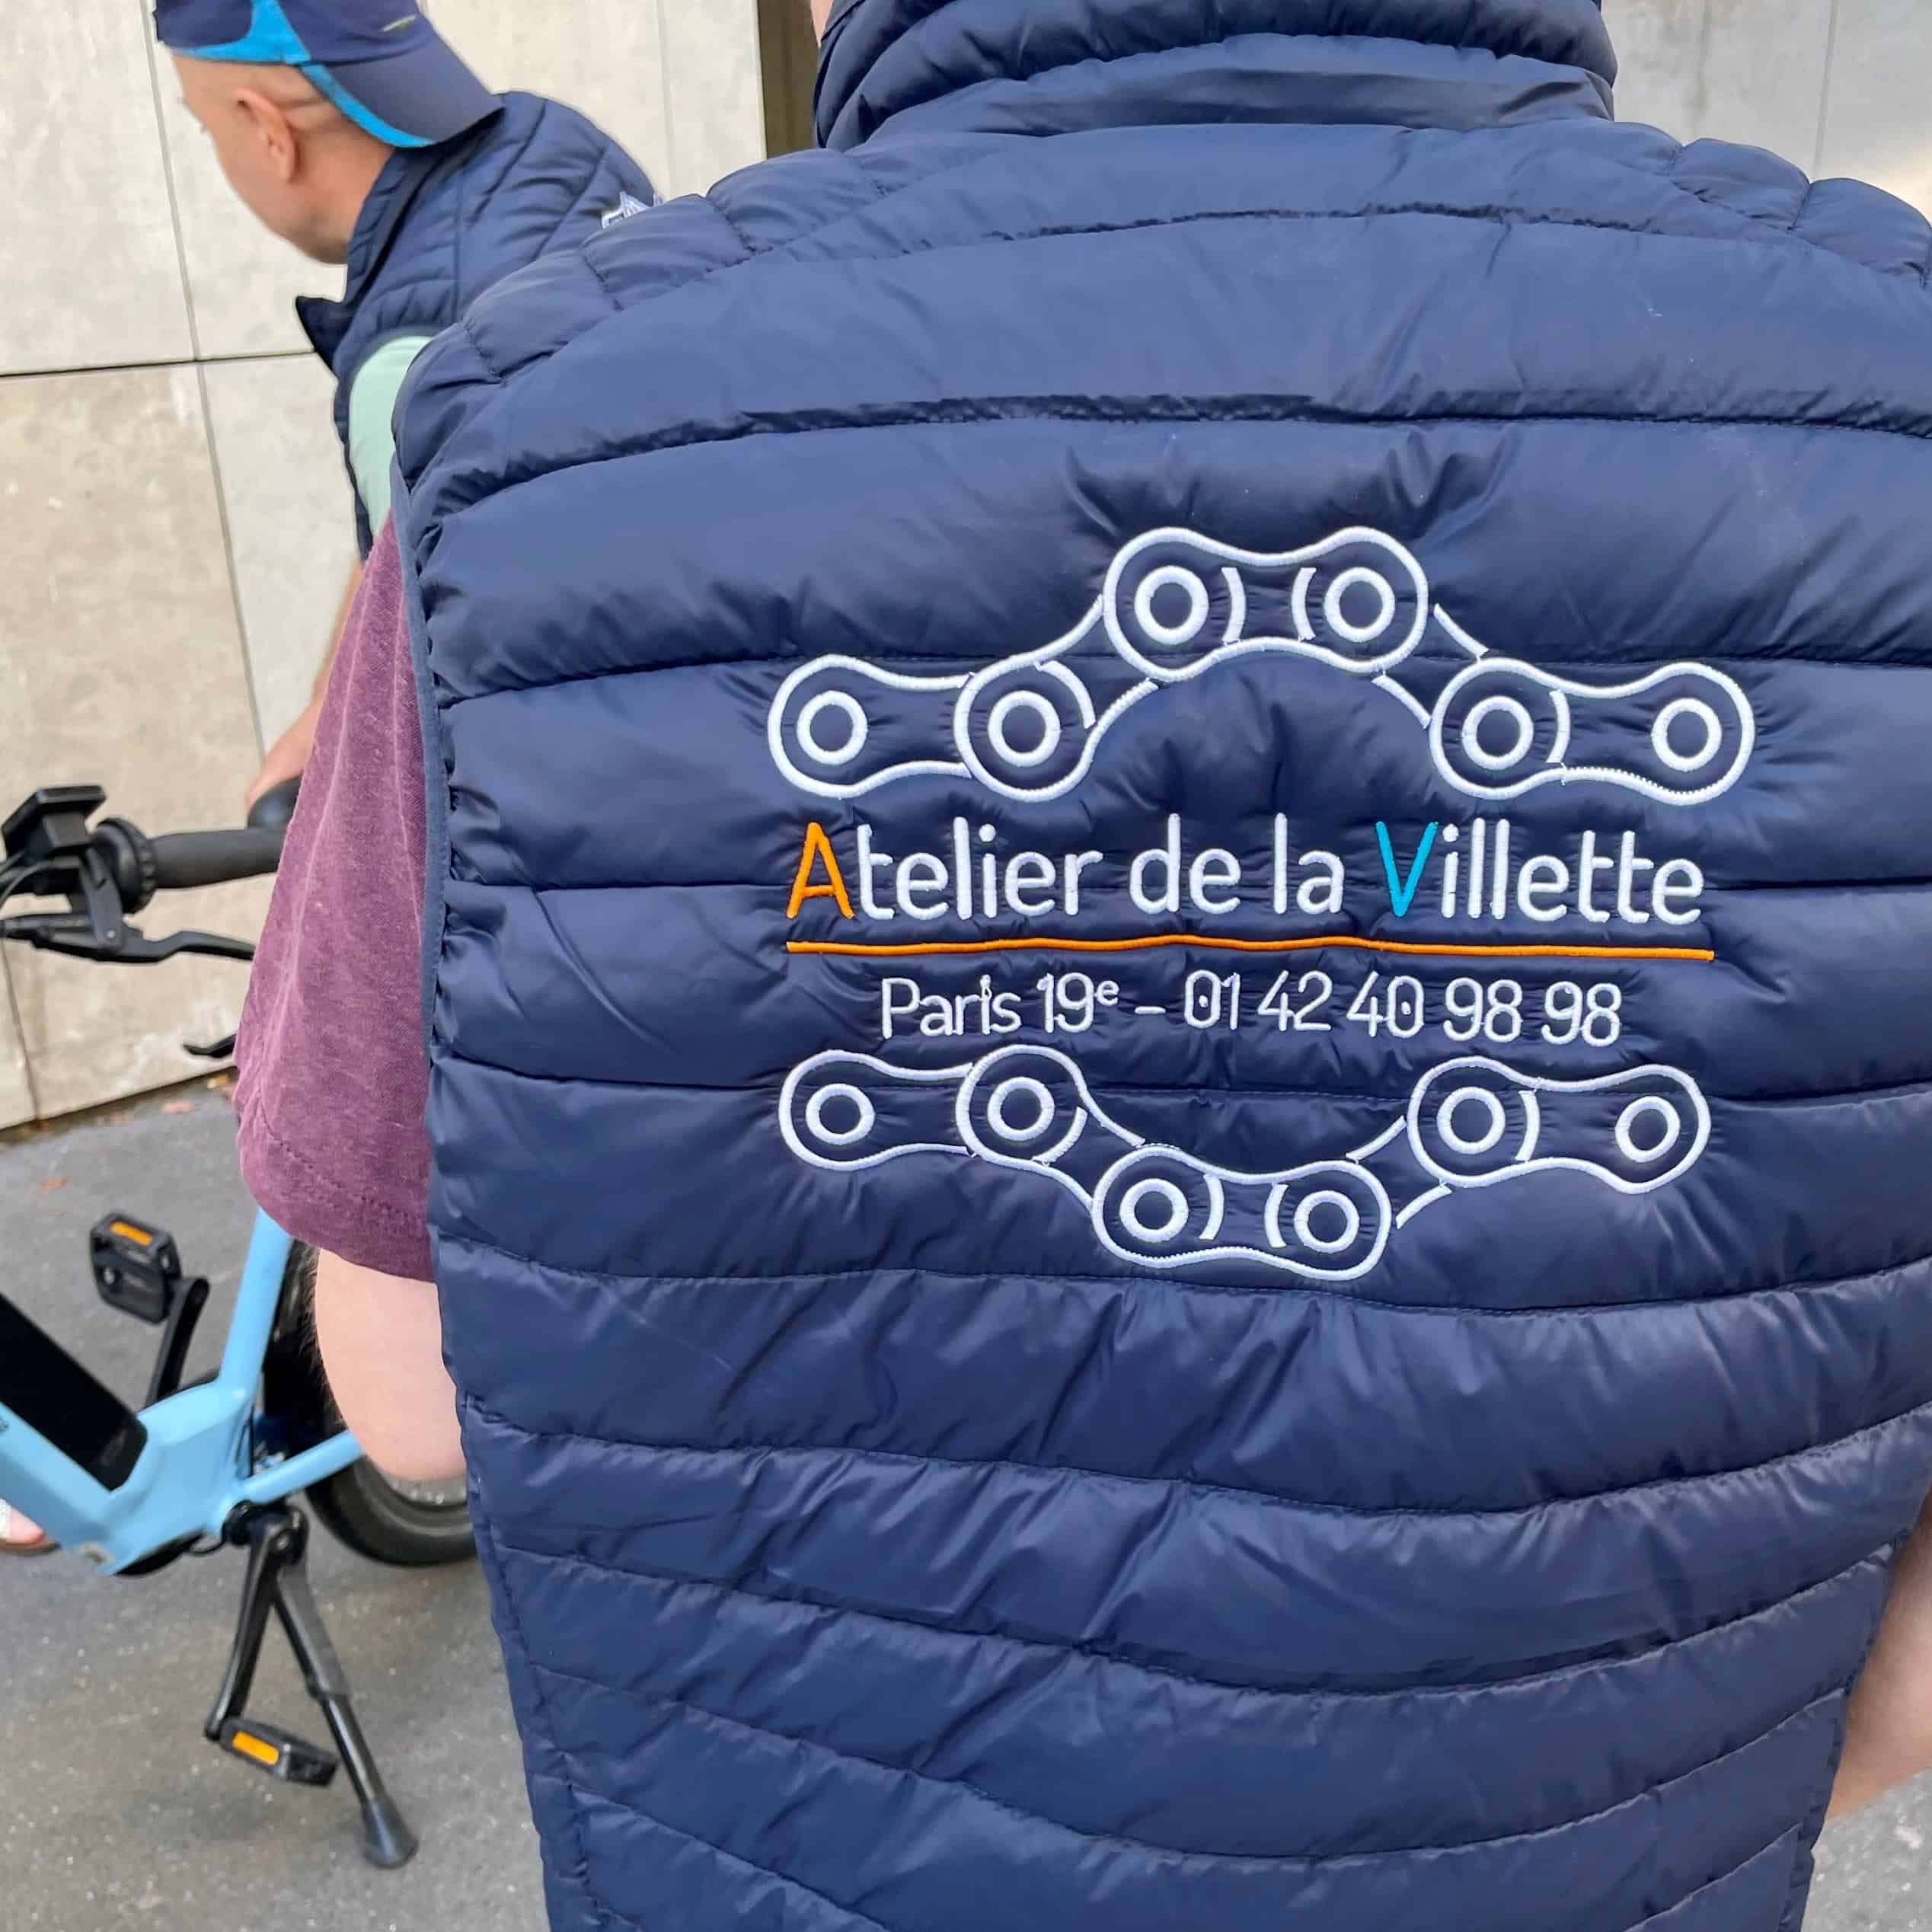 Photo de la doudoune brodée avec le logo Atelier de la Villette pour l'équipe cycles